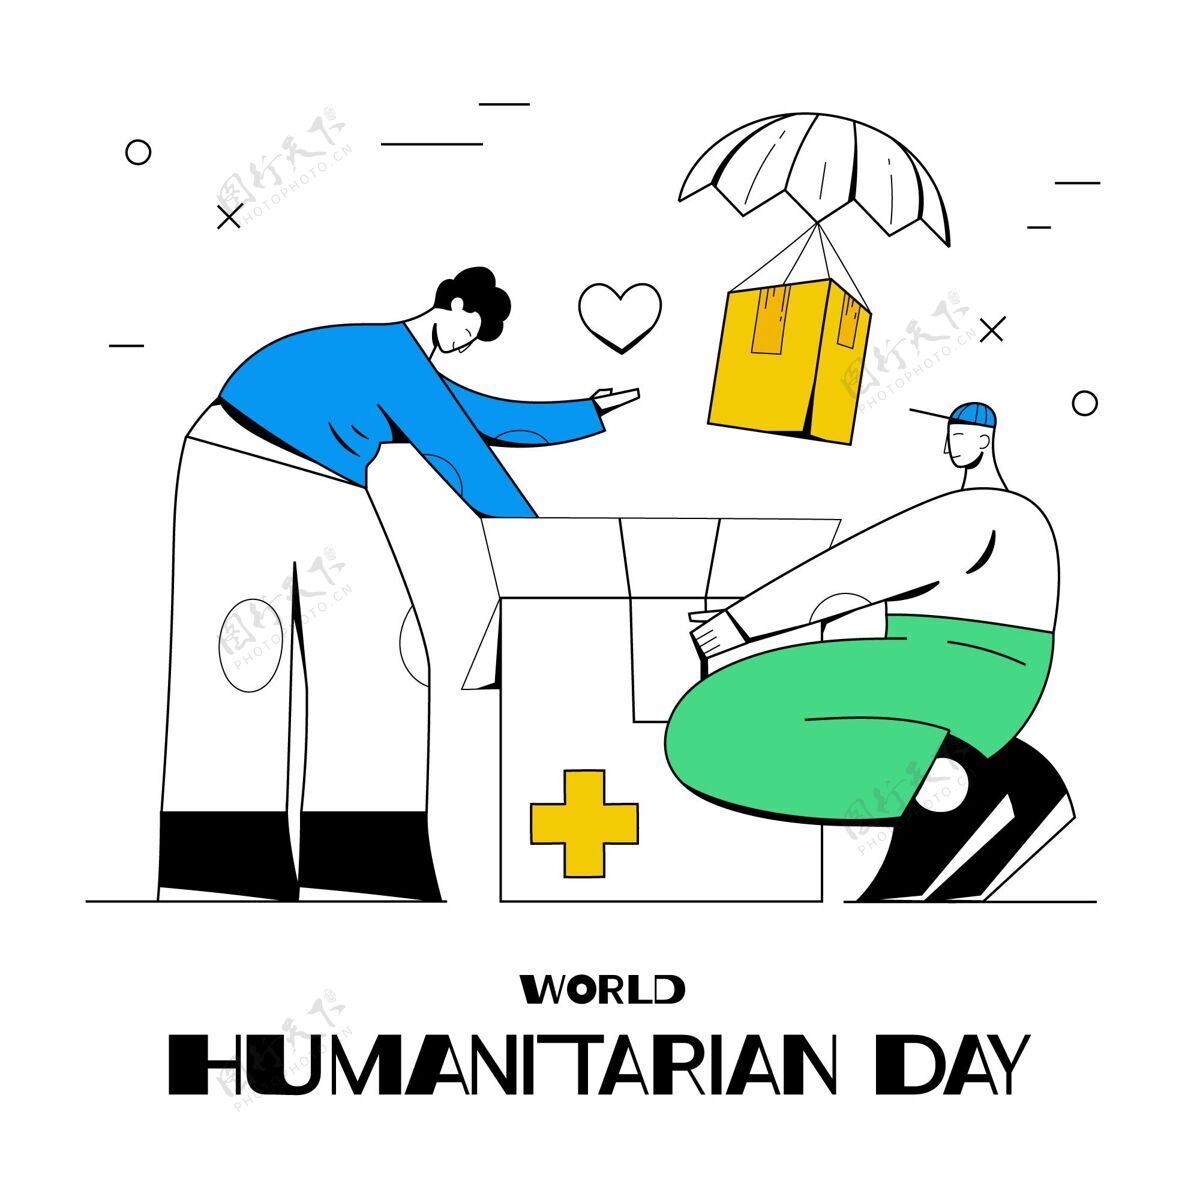 纪念手绘世界人道主义日插画帮助福利人类